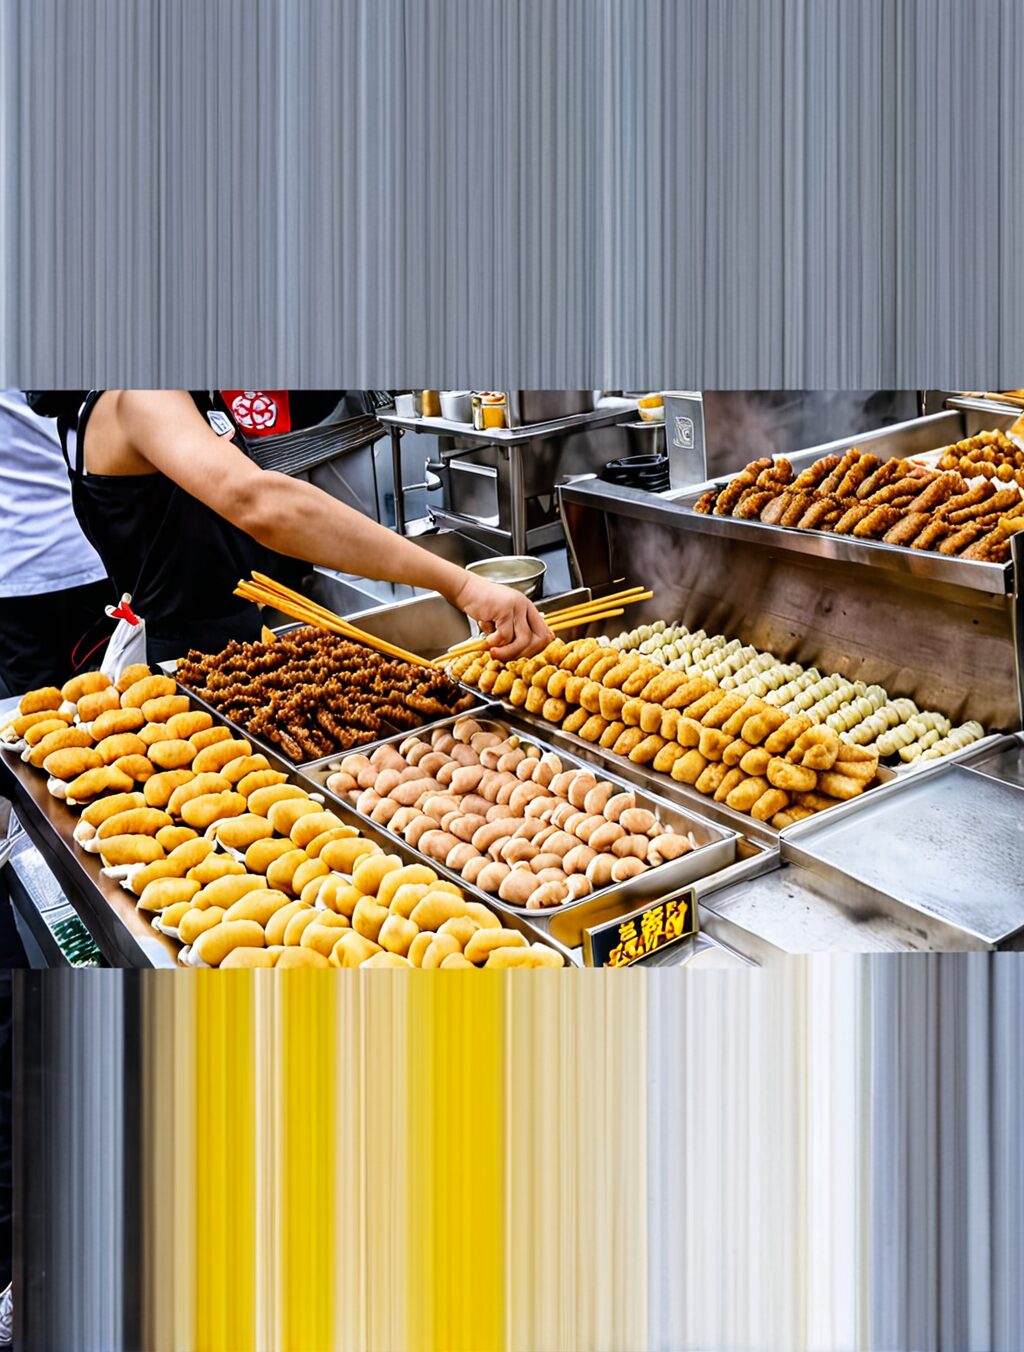 street food japan tokyo youtube